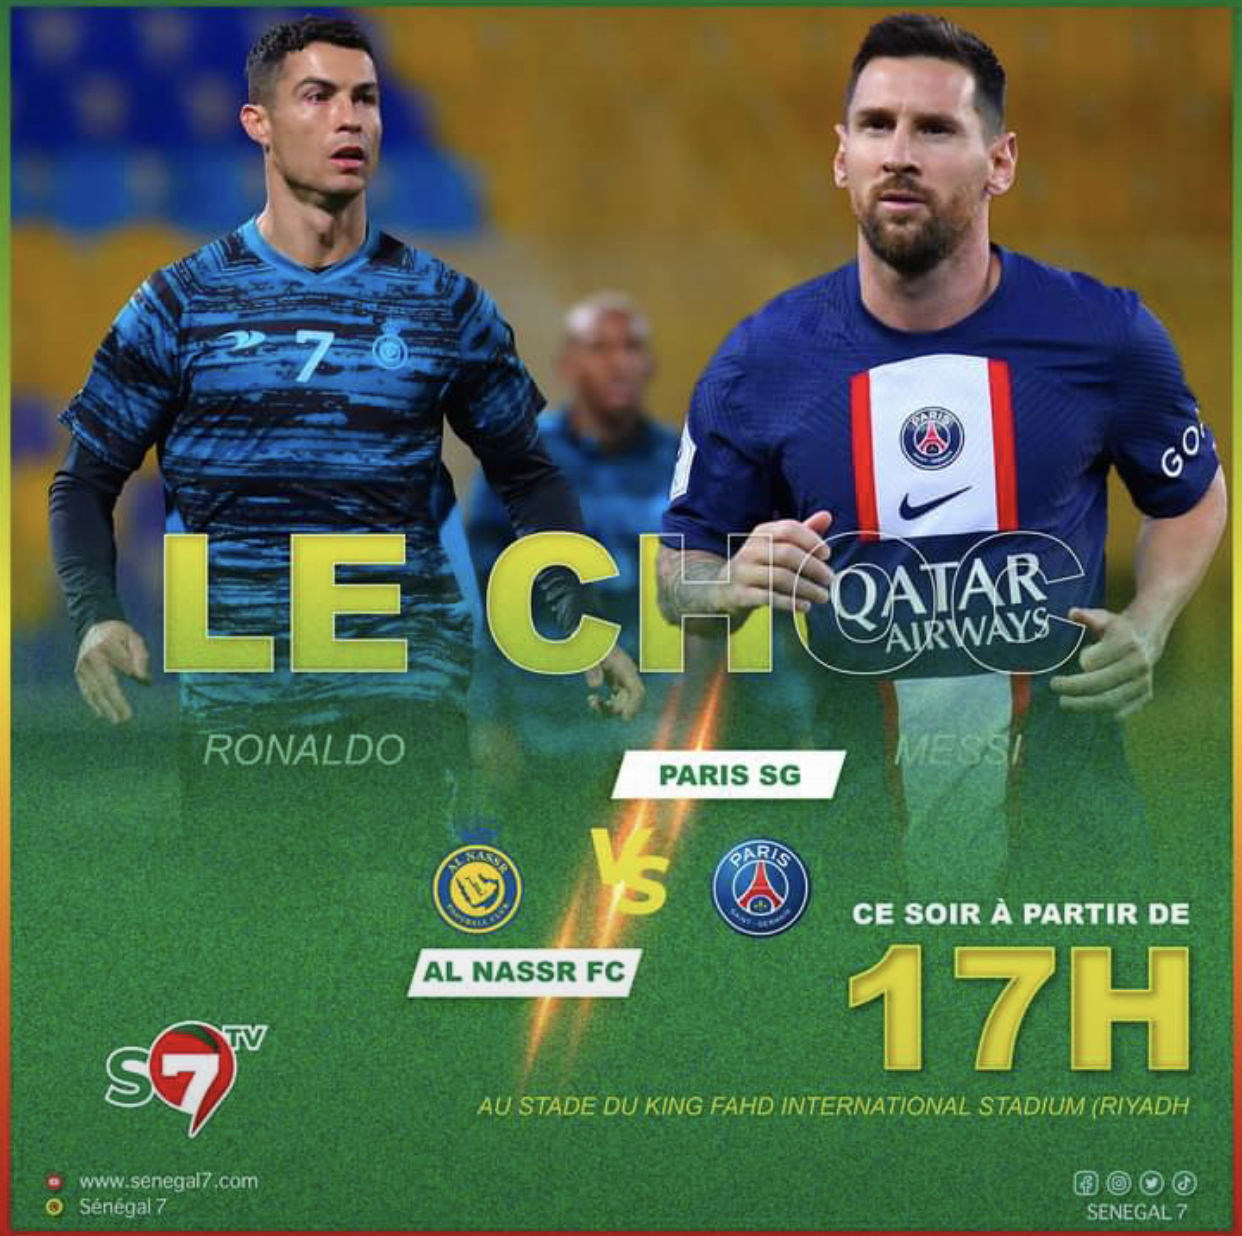 Le choc Al Nasr contre PSG ce soir à 17h. Ronaldo vs Messi l’ultime affrontement probablement